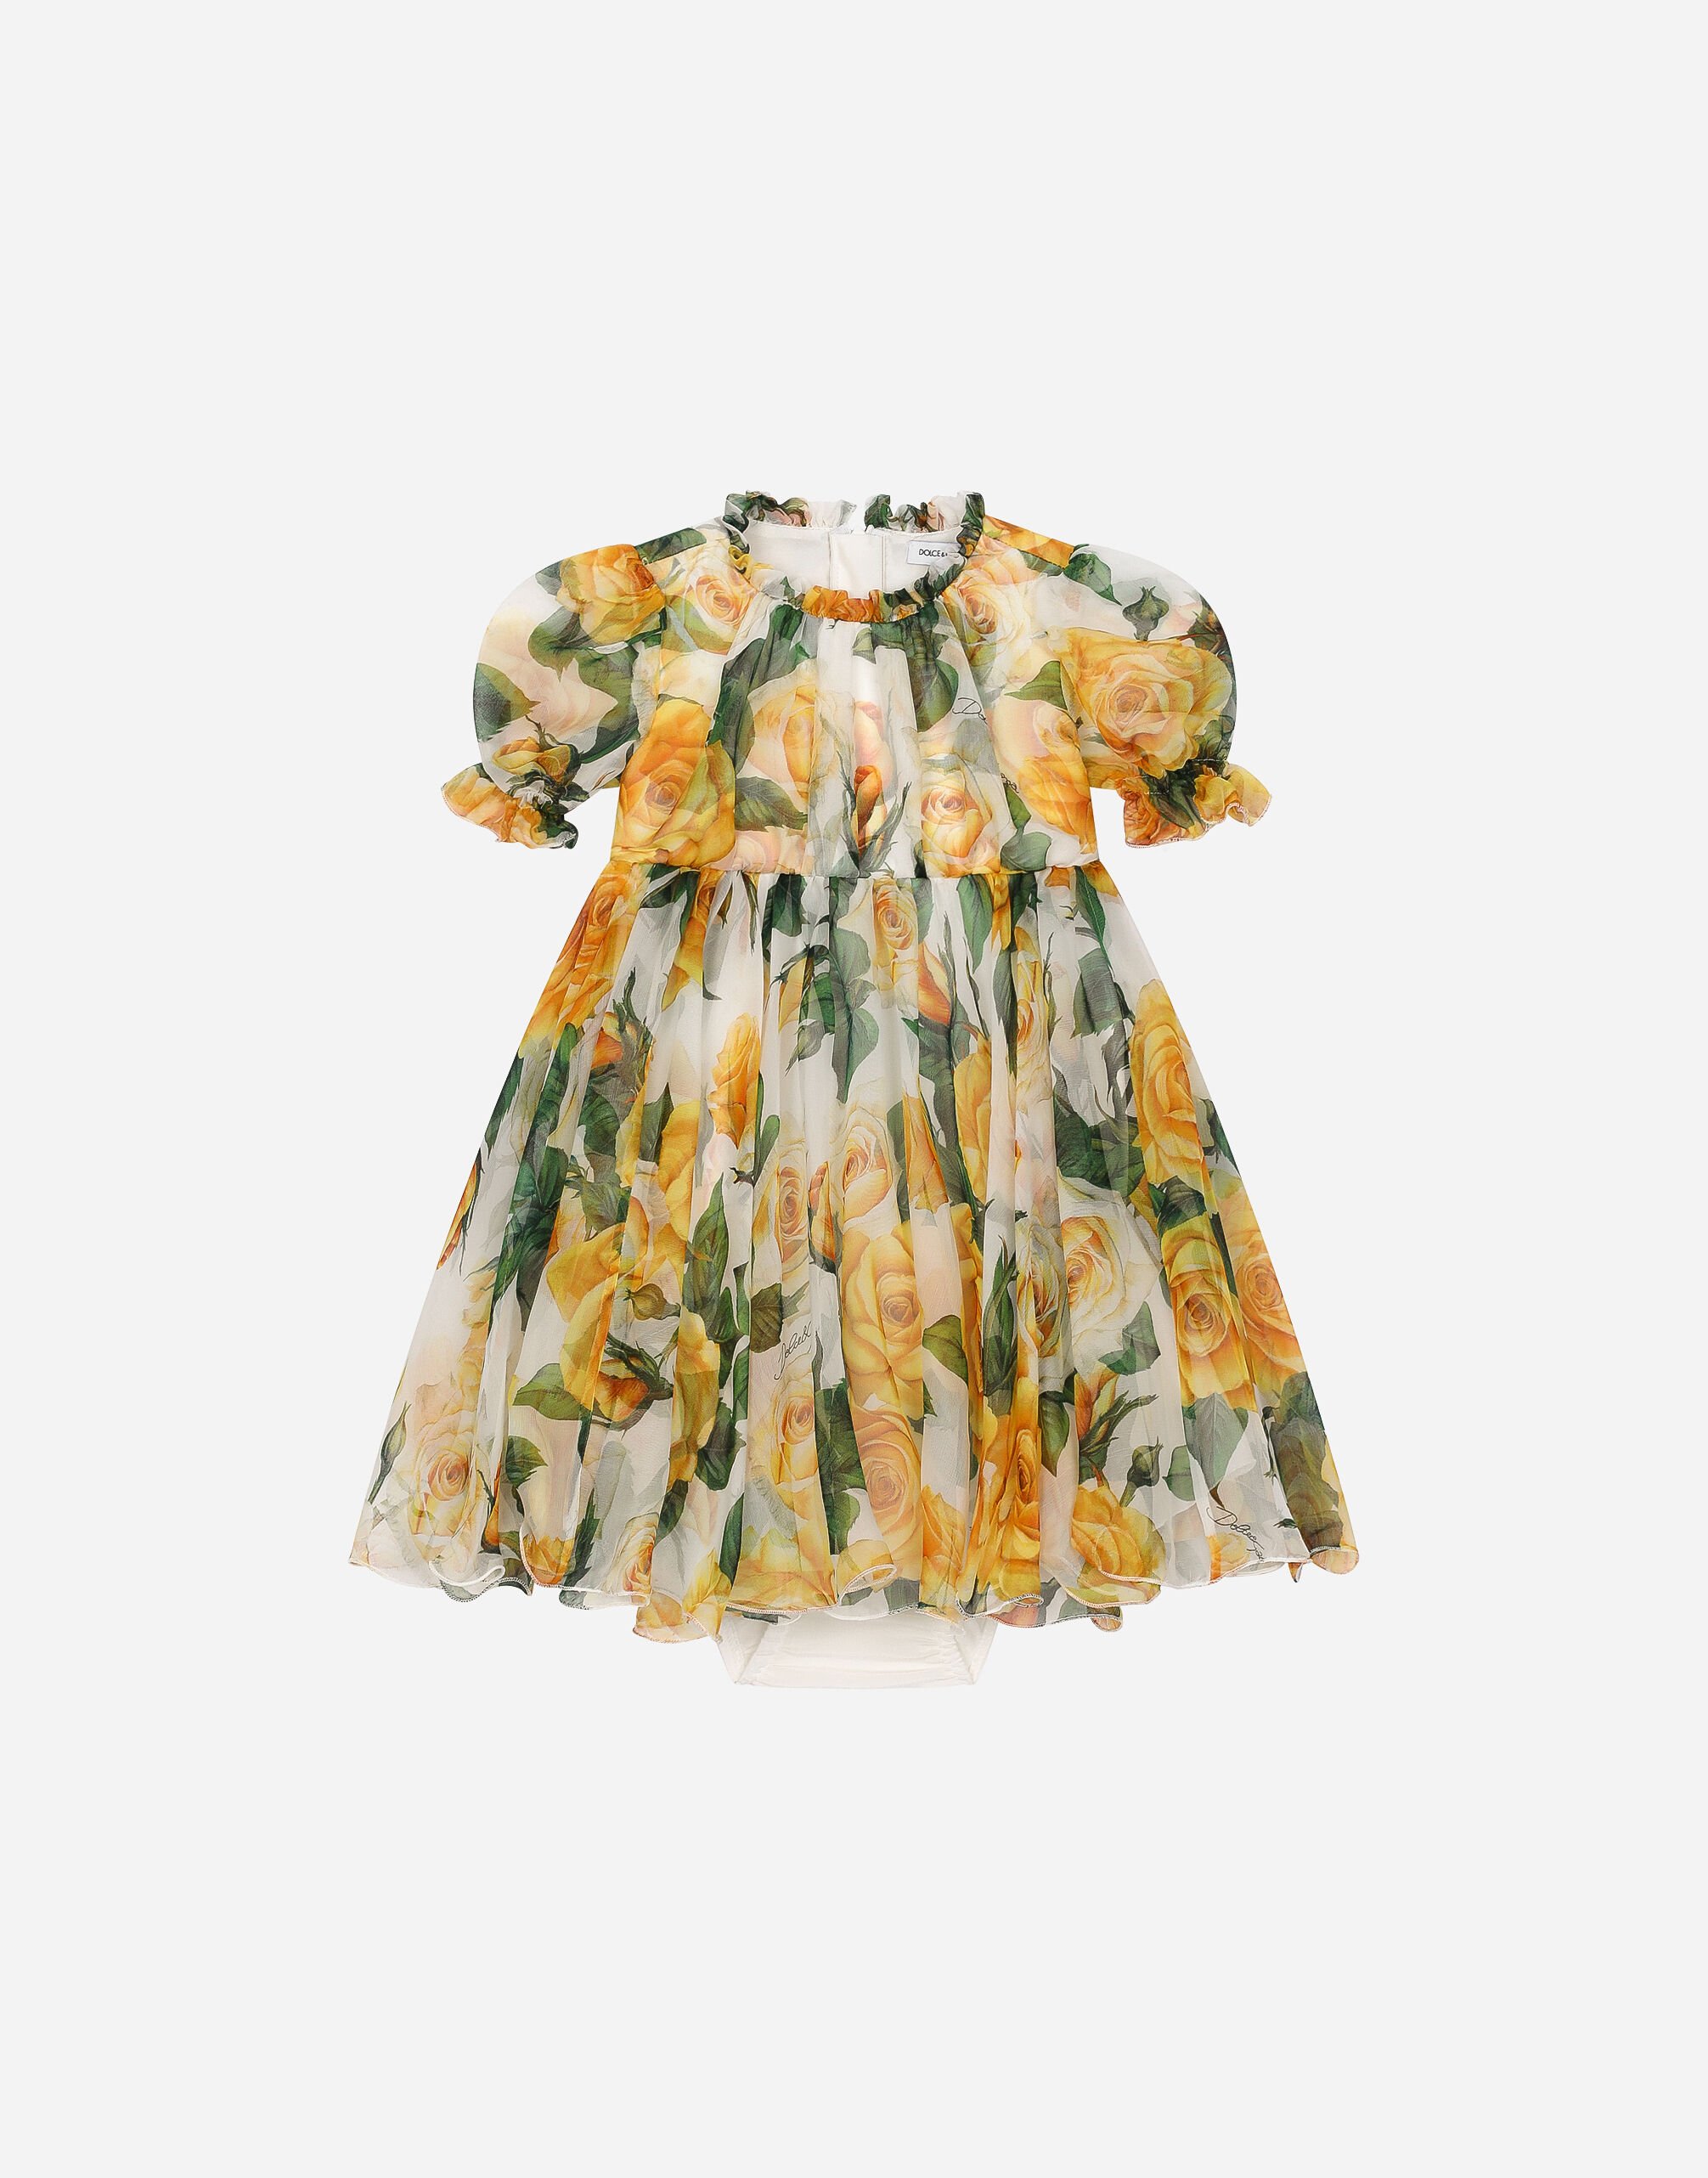 Dolce & Gabbana Kleid mit Höschen aus Chiffon Print gelbe Rosen Drucken L23DP2HS5QR